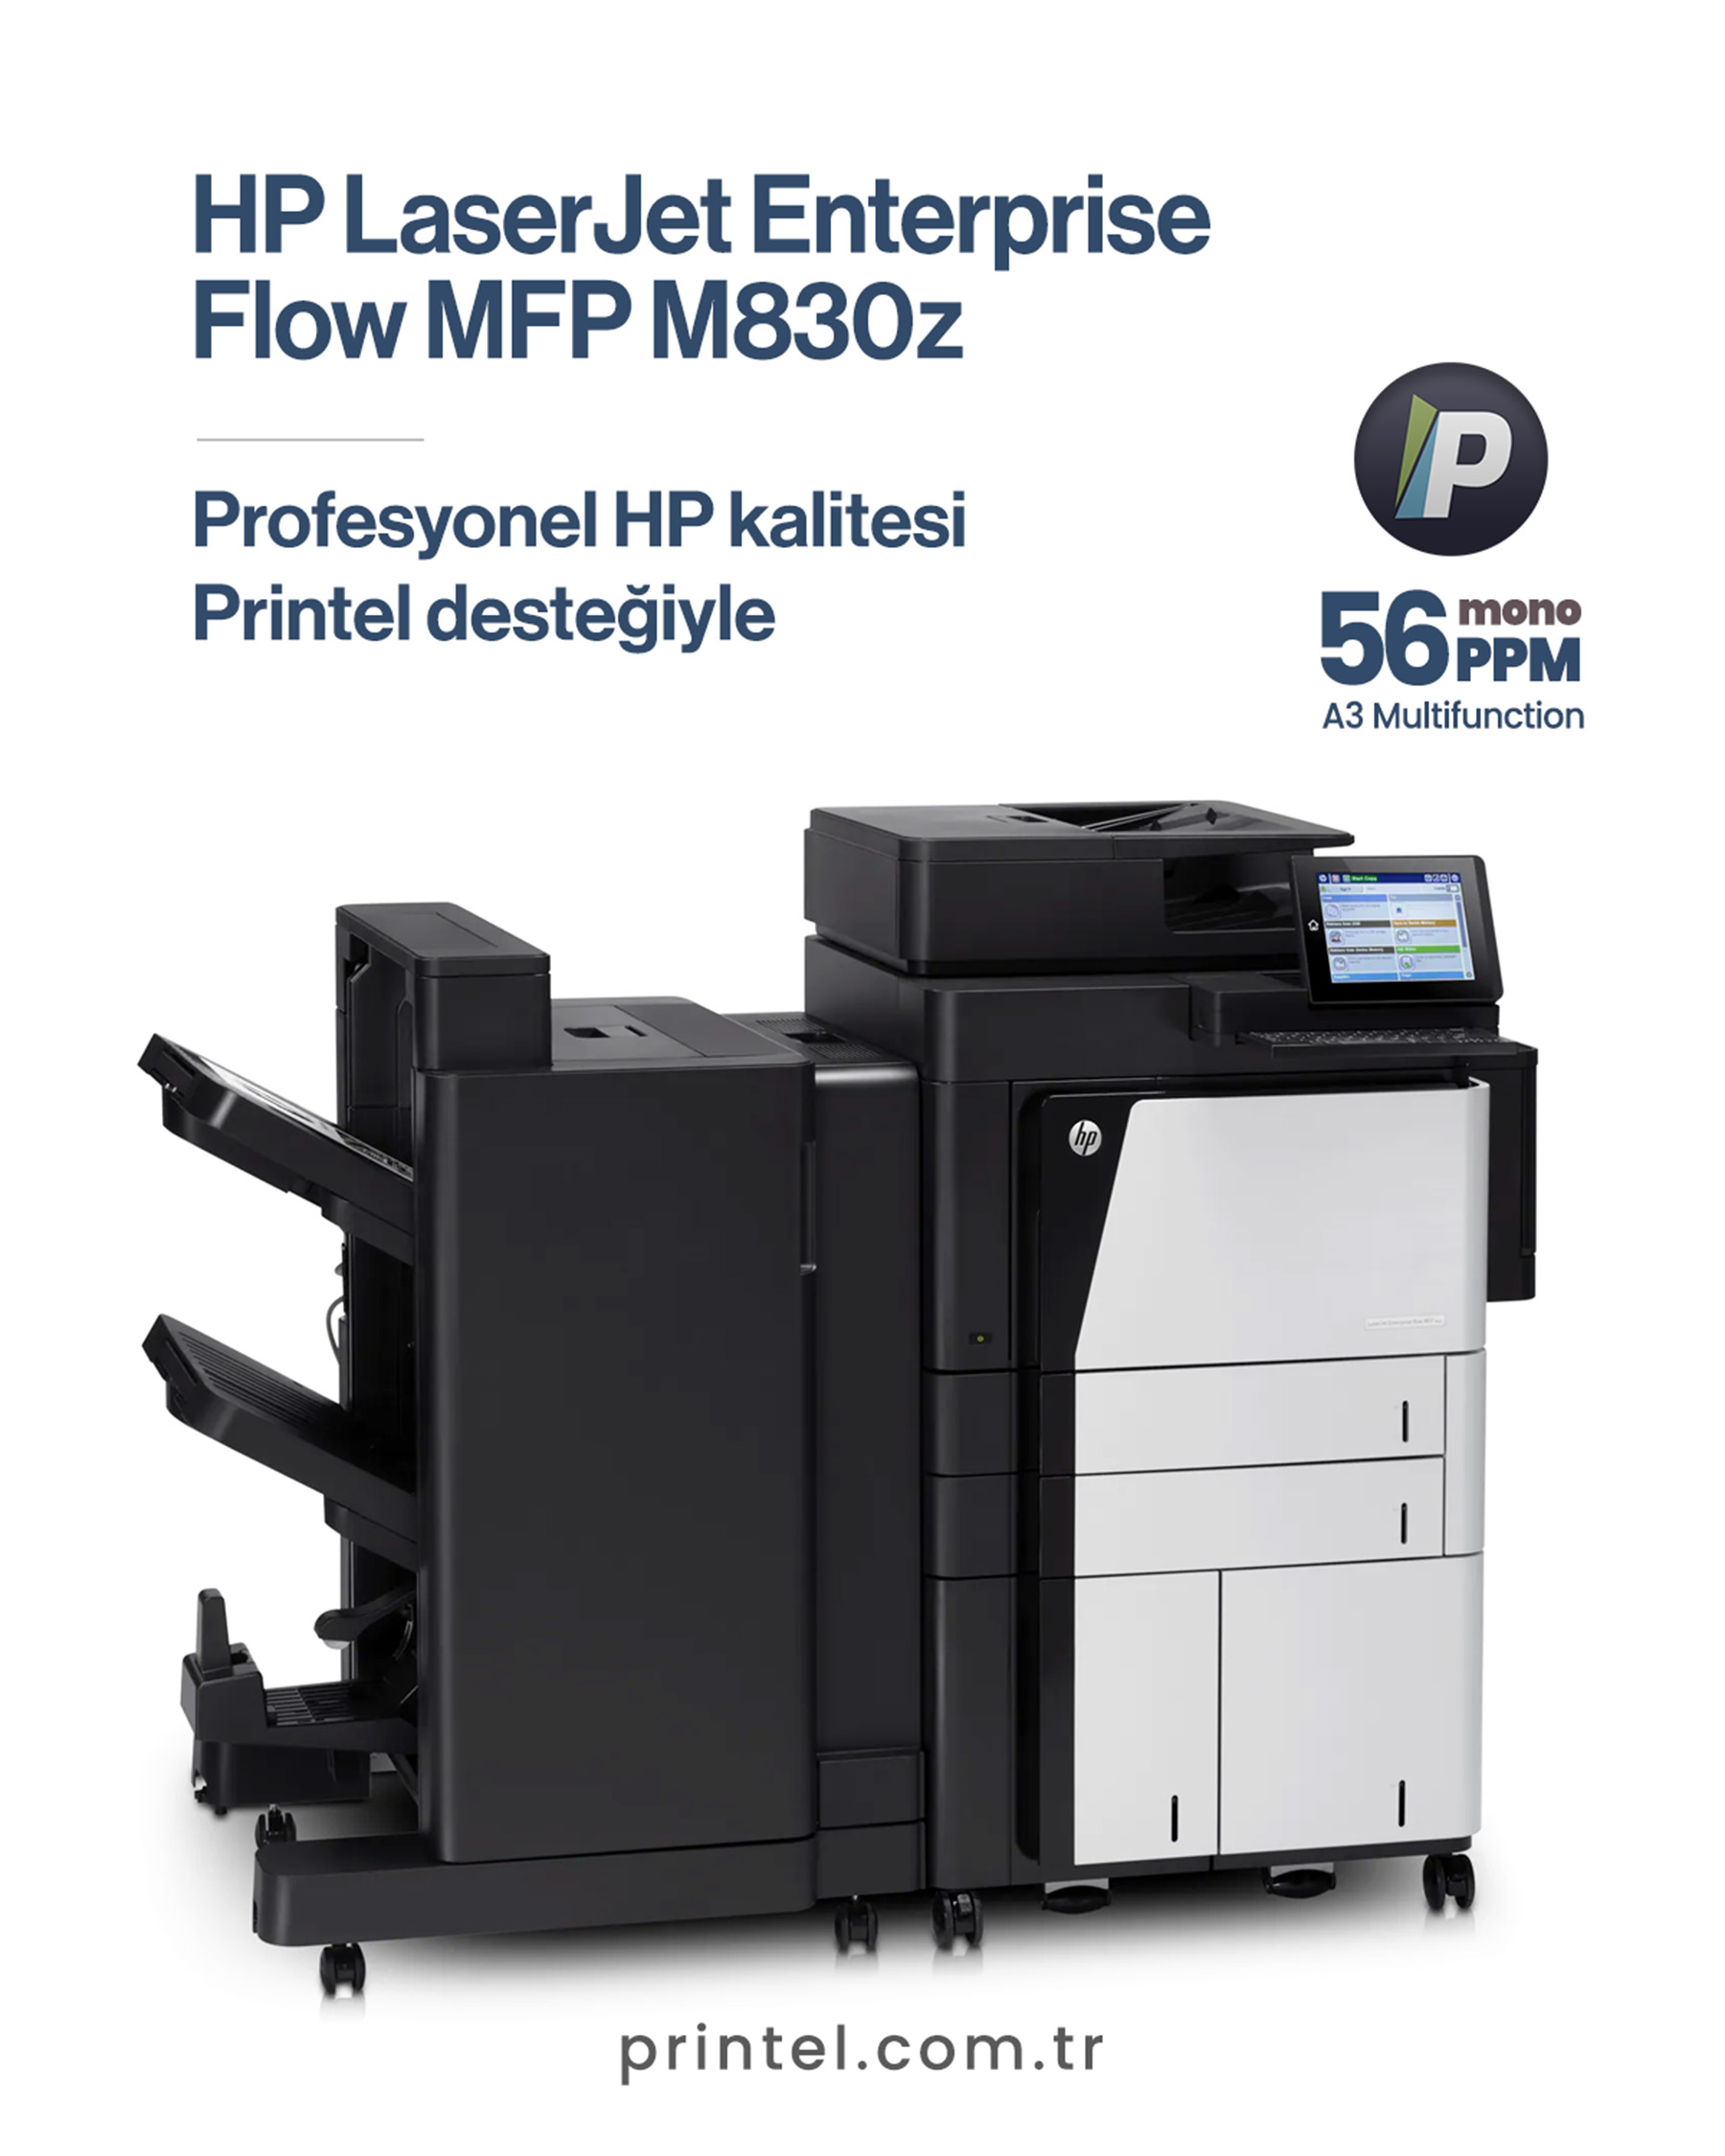 HP LaserJet Enterprise flow MFP M830z: Kurumsal Verimliliği Artırmanın Anahtarı 1